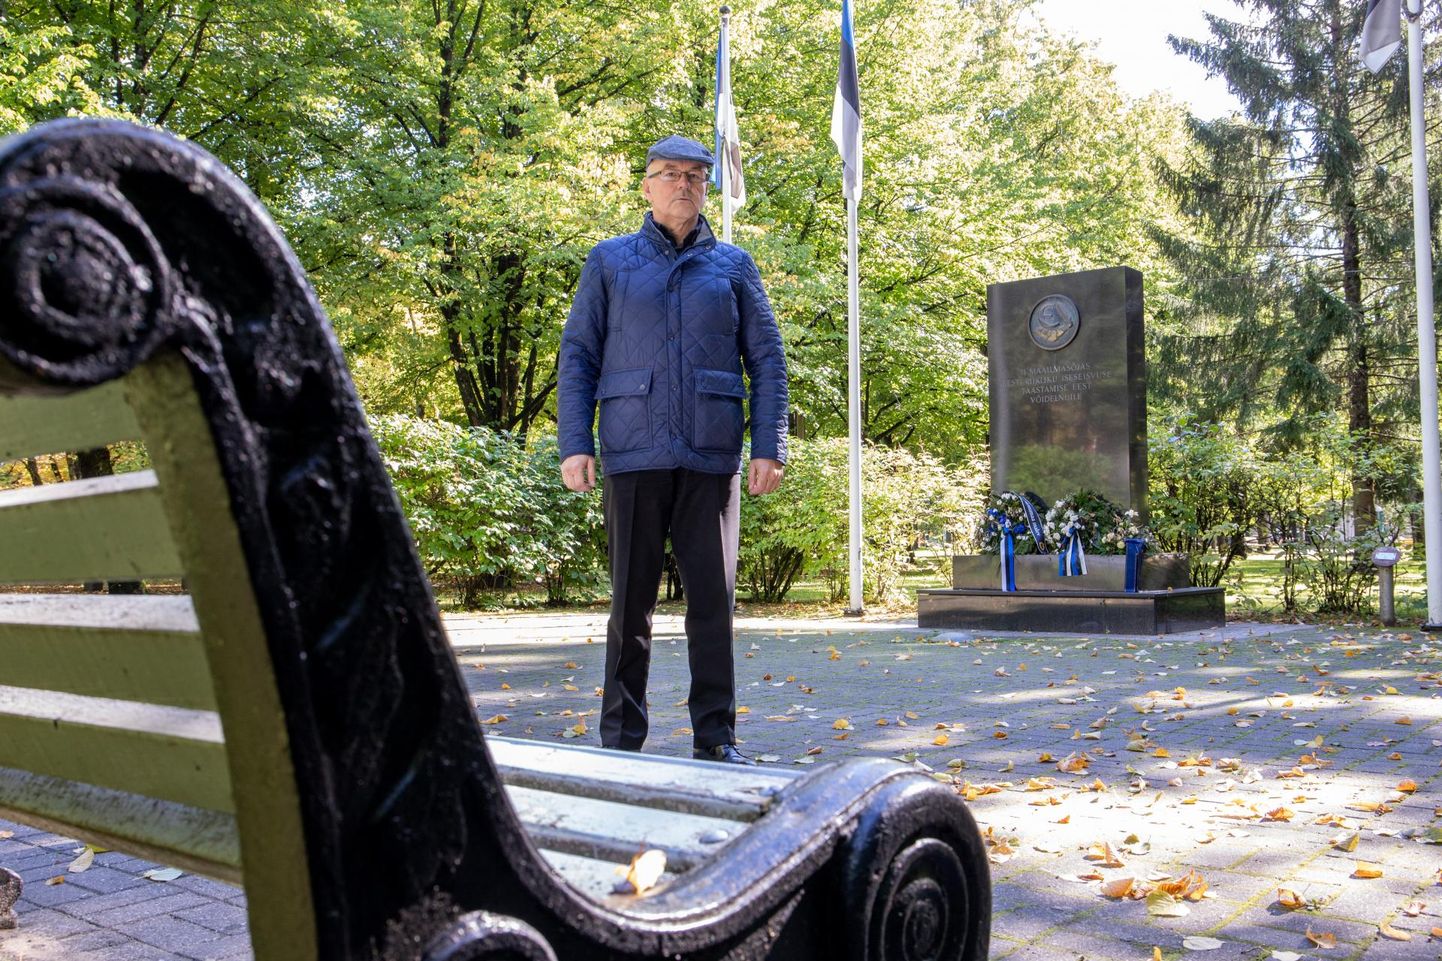 Eesti vabadusvõitlejate liidu juhatuse liige Heiki Magnus seismas Pärnu Vabaduse parki 2003. aastal püstitatud monumendi juures.